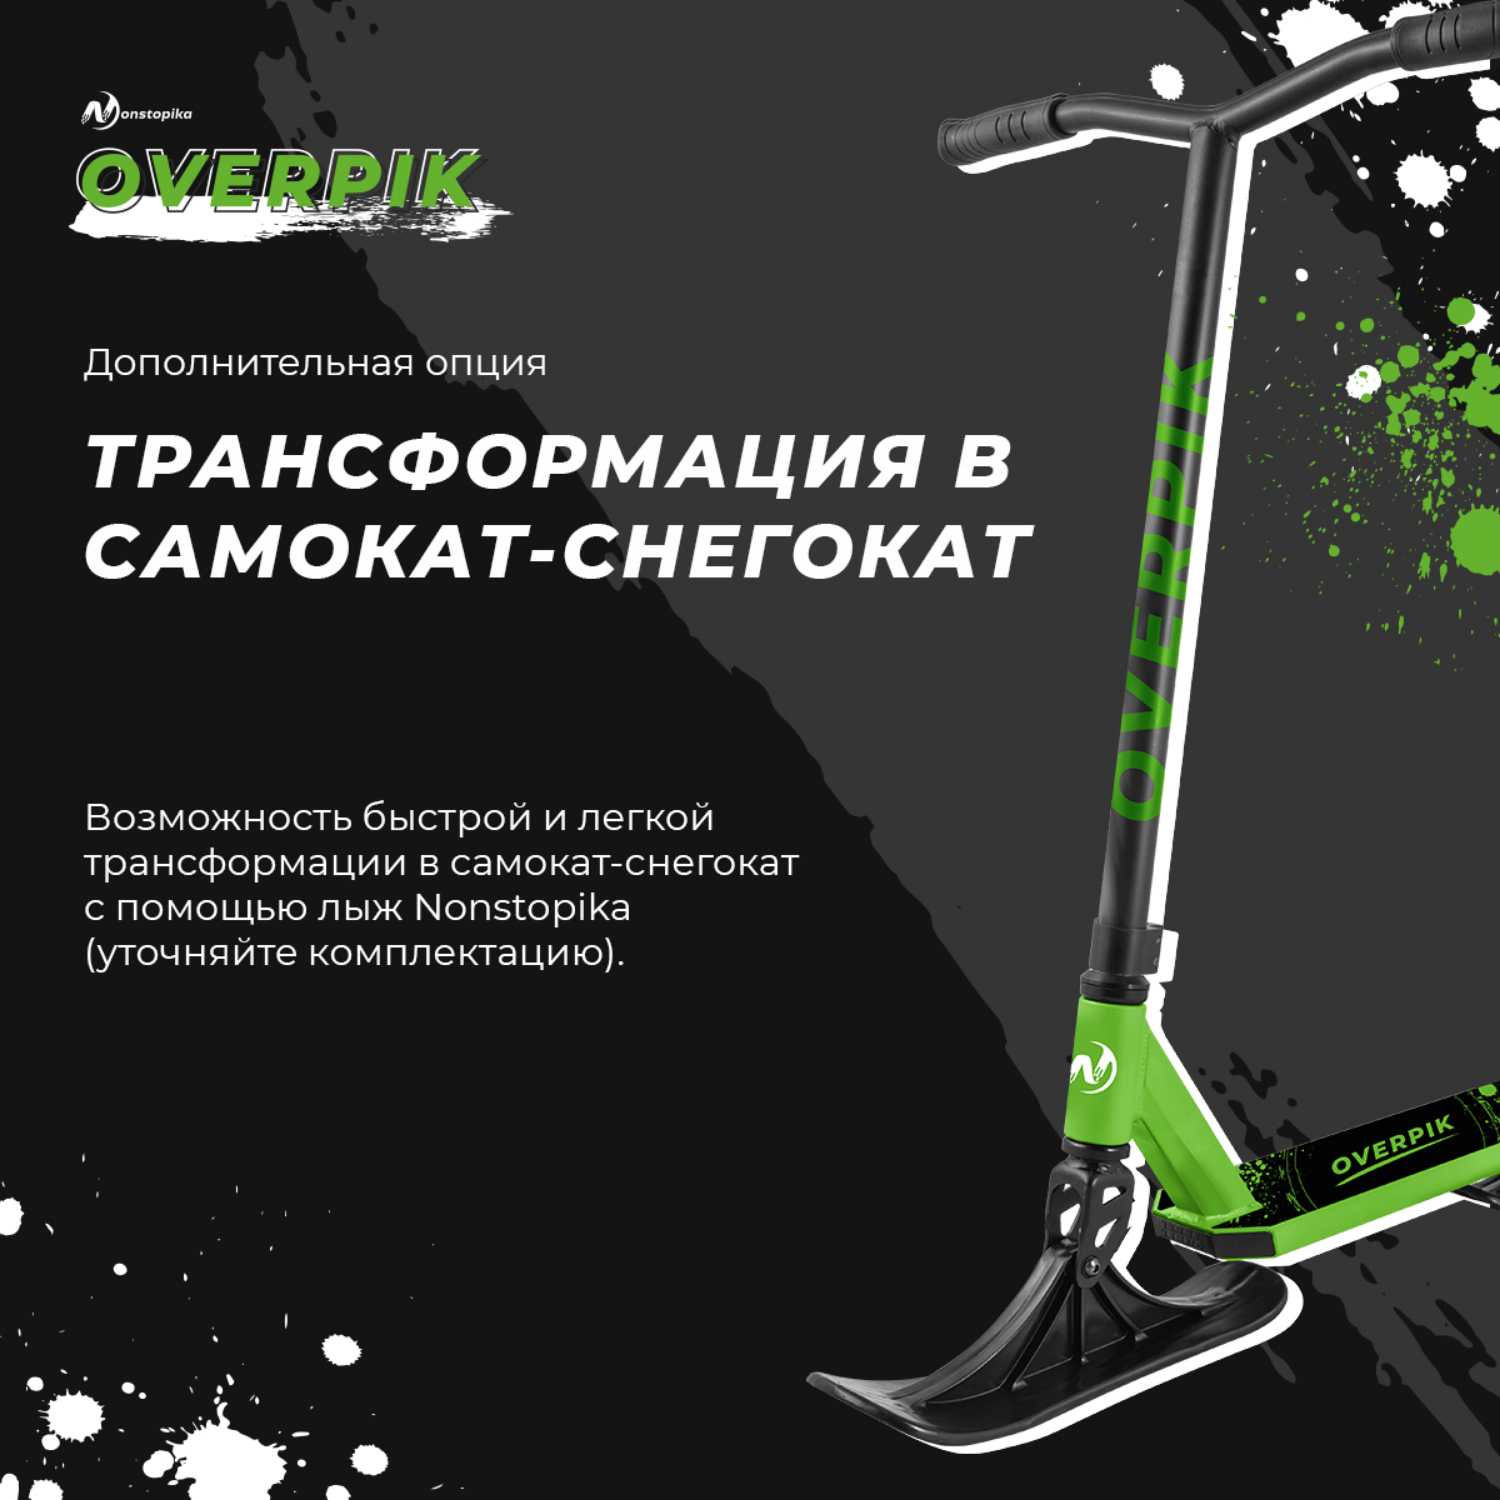 Самокат ZDK трюковый Nonstopika Overpikс с лыжами green - фото 2